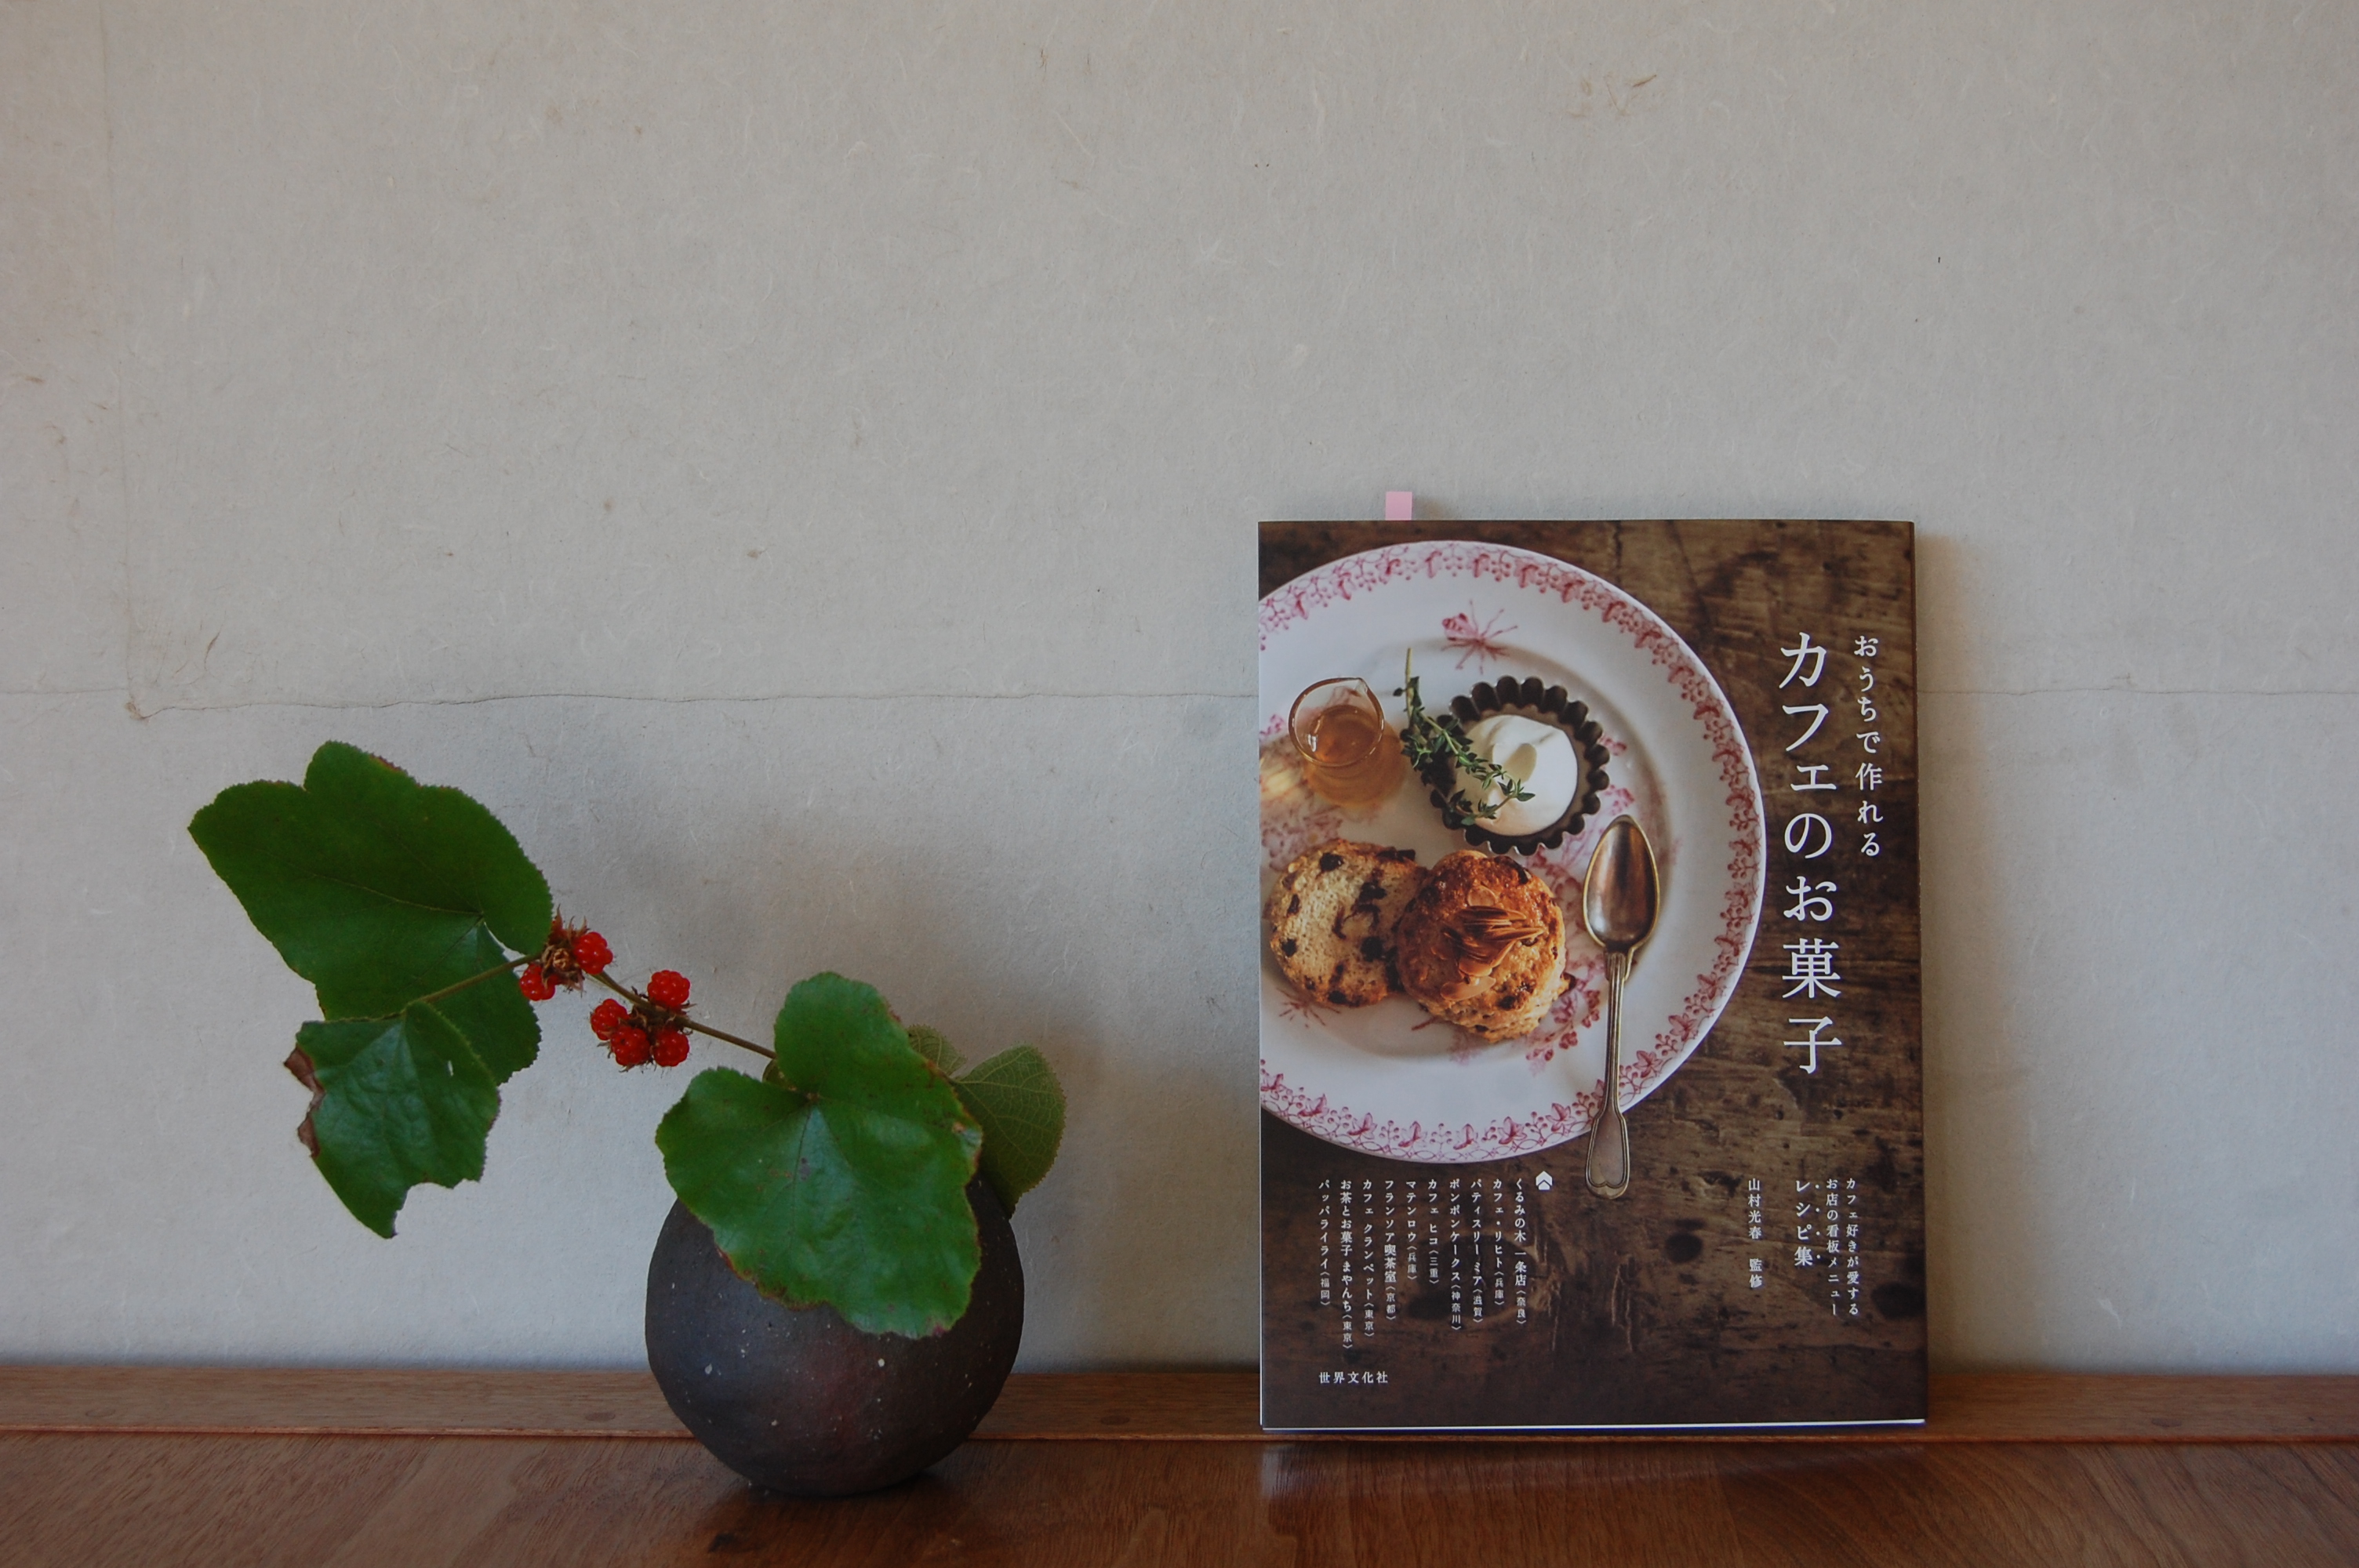 世界文化社発行の「おうちで作れるカフェのお菓子」に掲載いただきました。